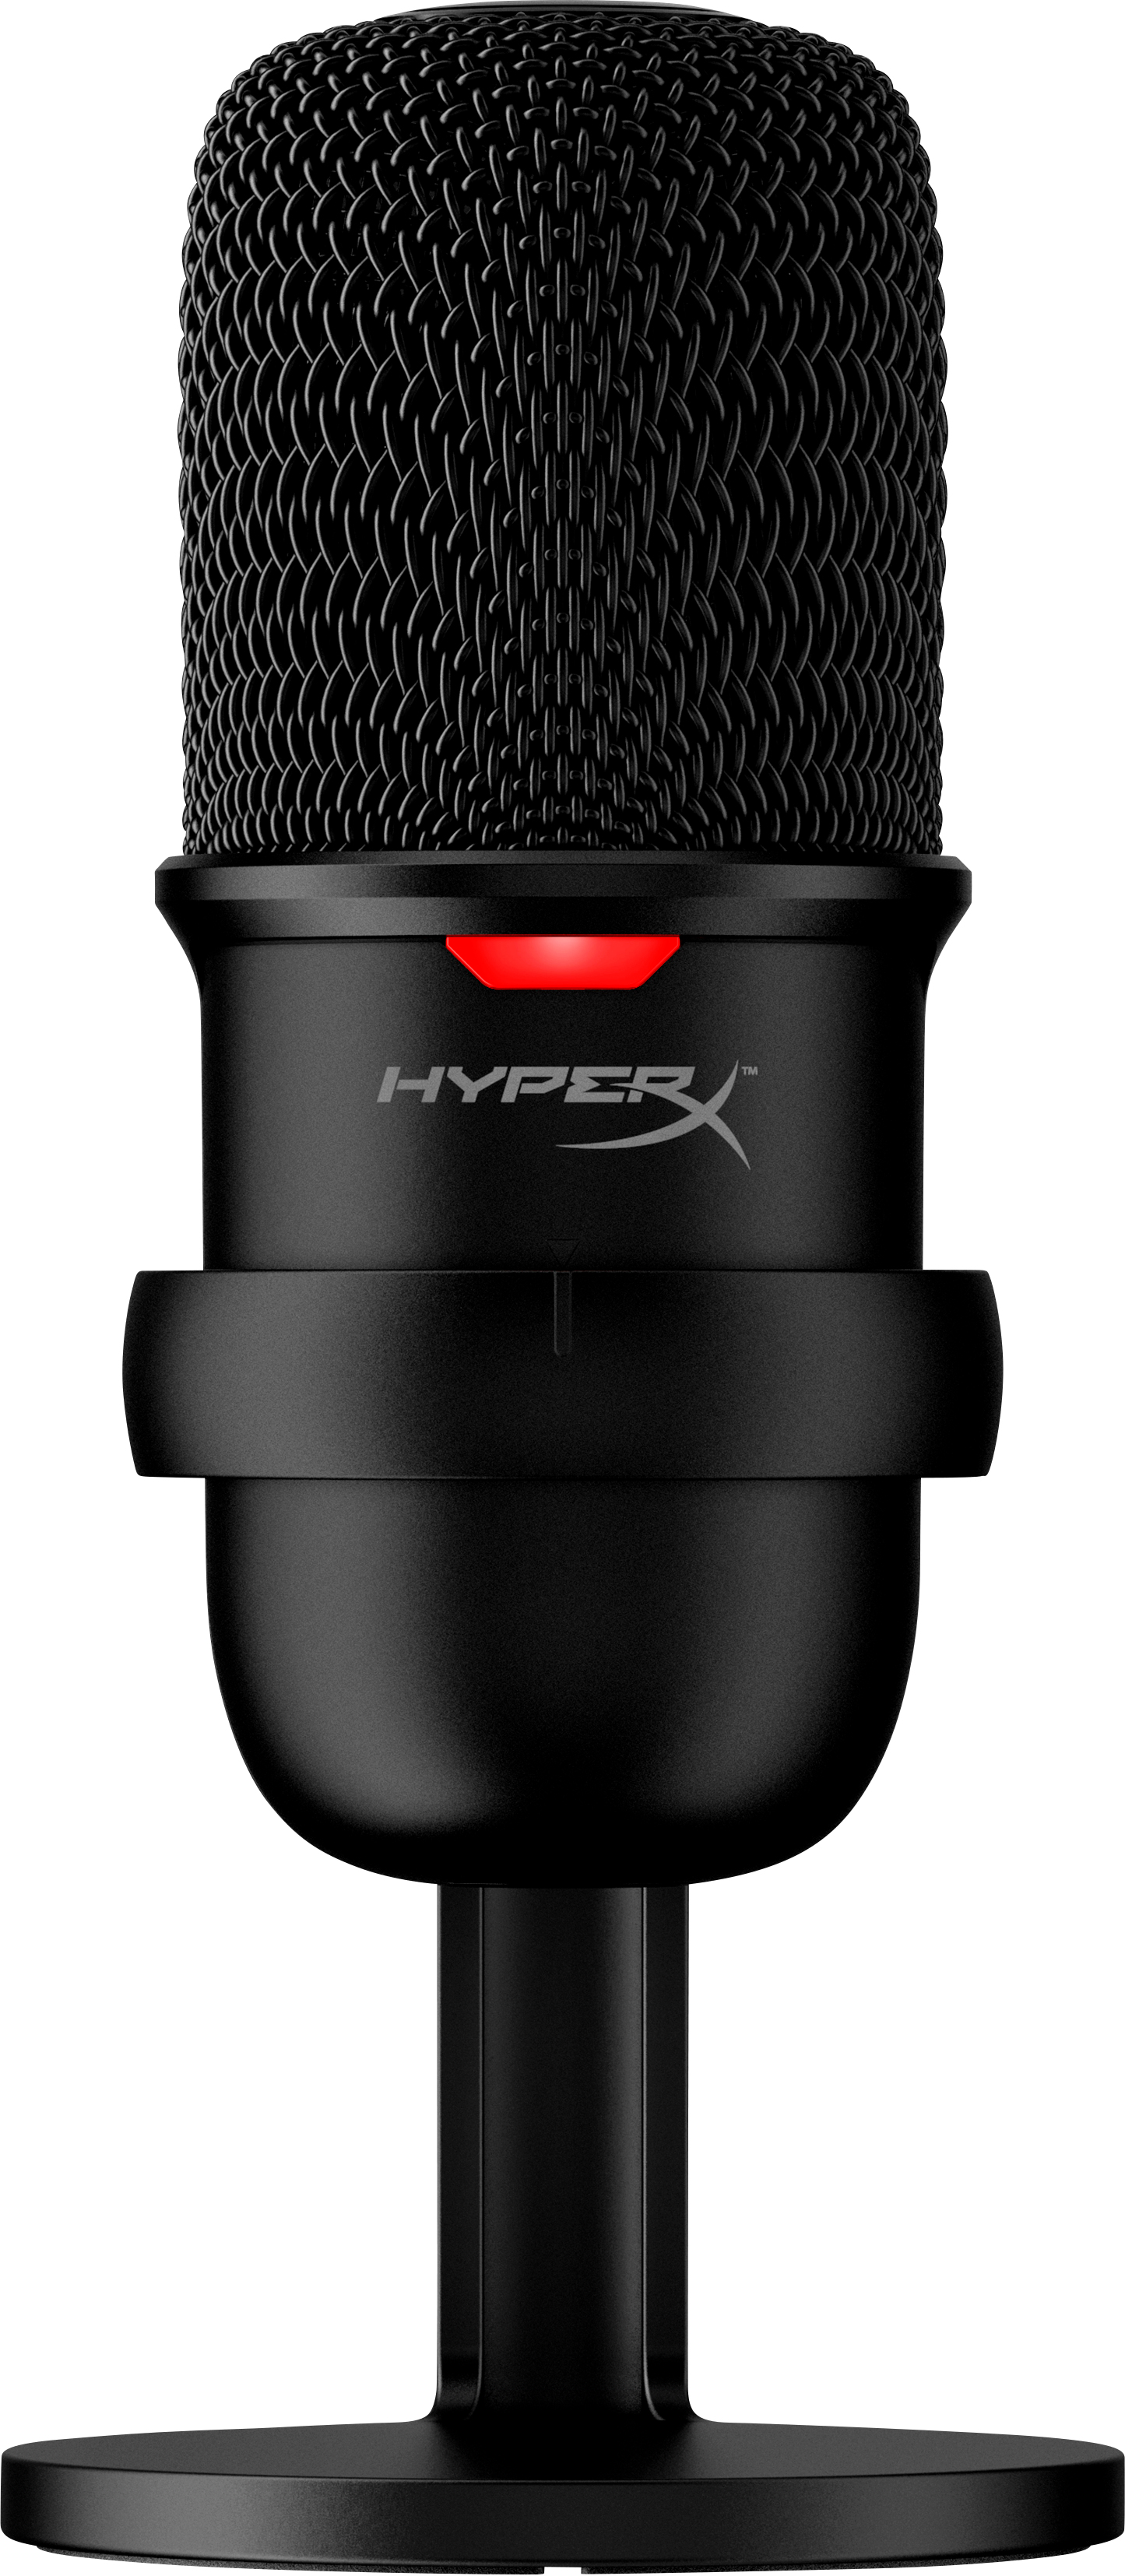 Image of HyperX SoloCast - USB Microphone (Black) Nero Microfono per PC